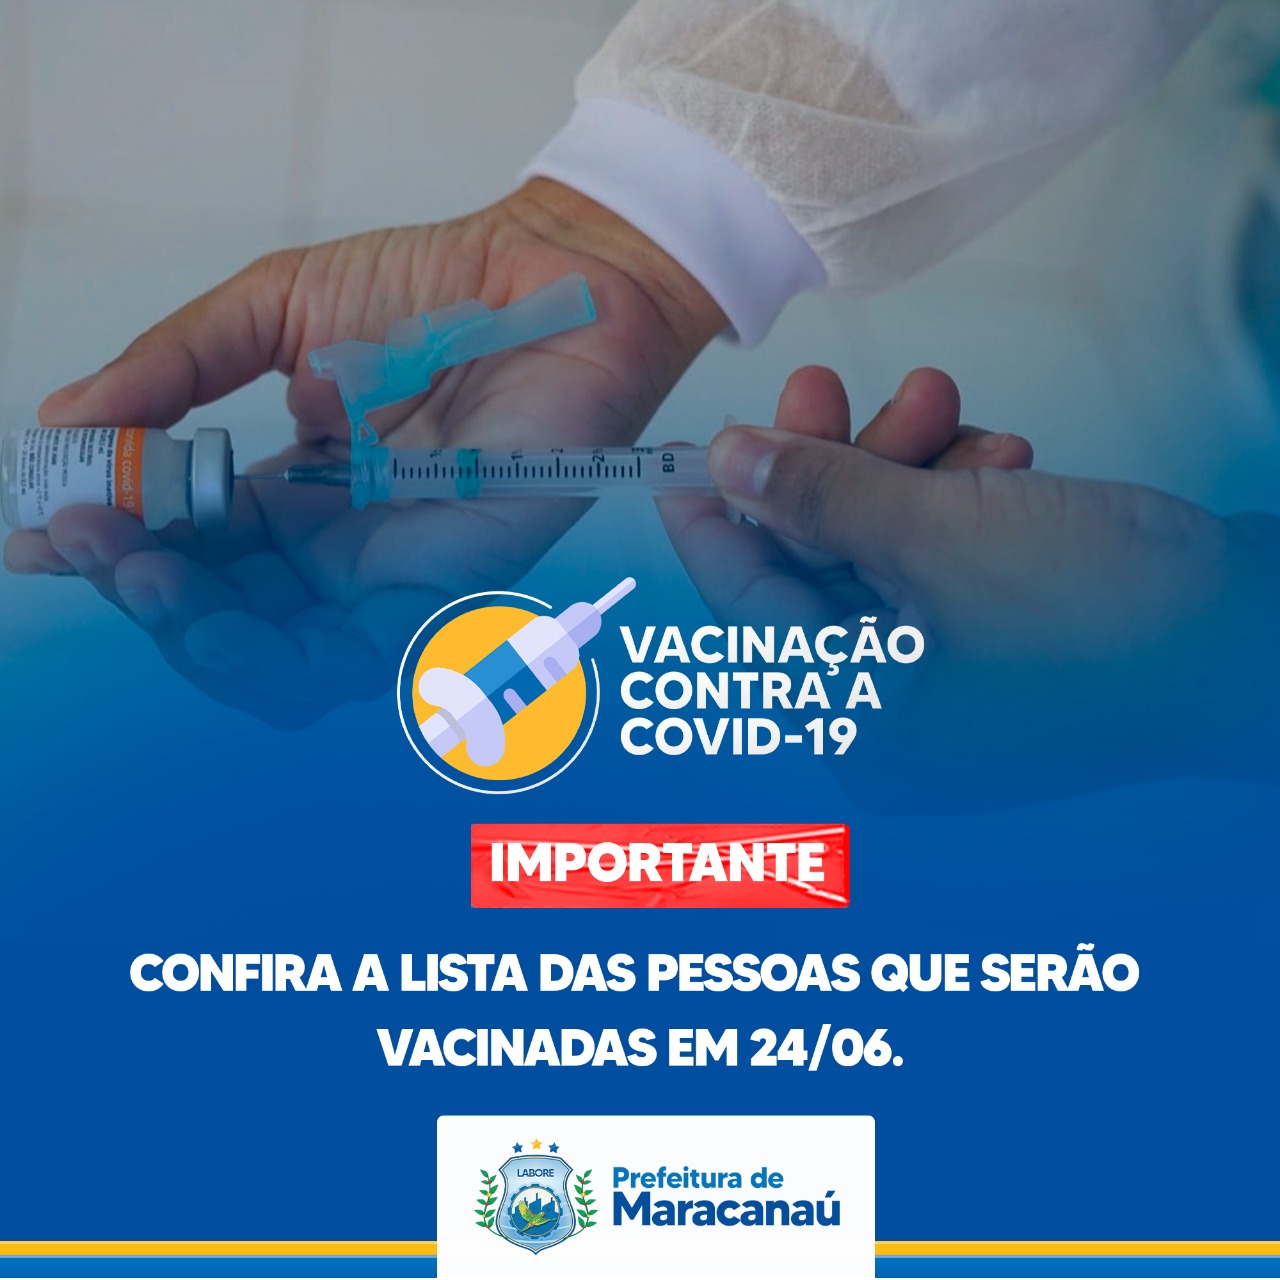 You are currently viewing Confira a lista das pessoas que serão vacinadas em 24/06